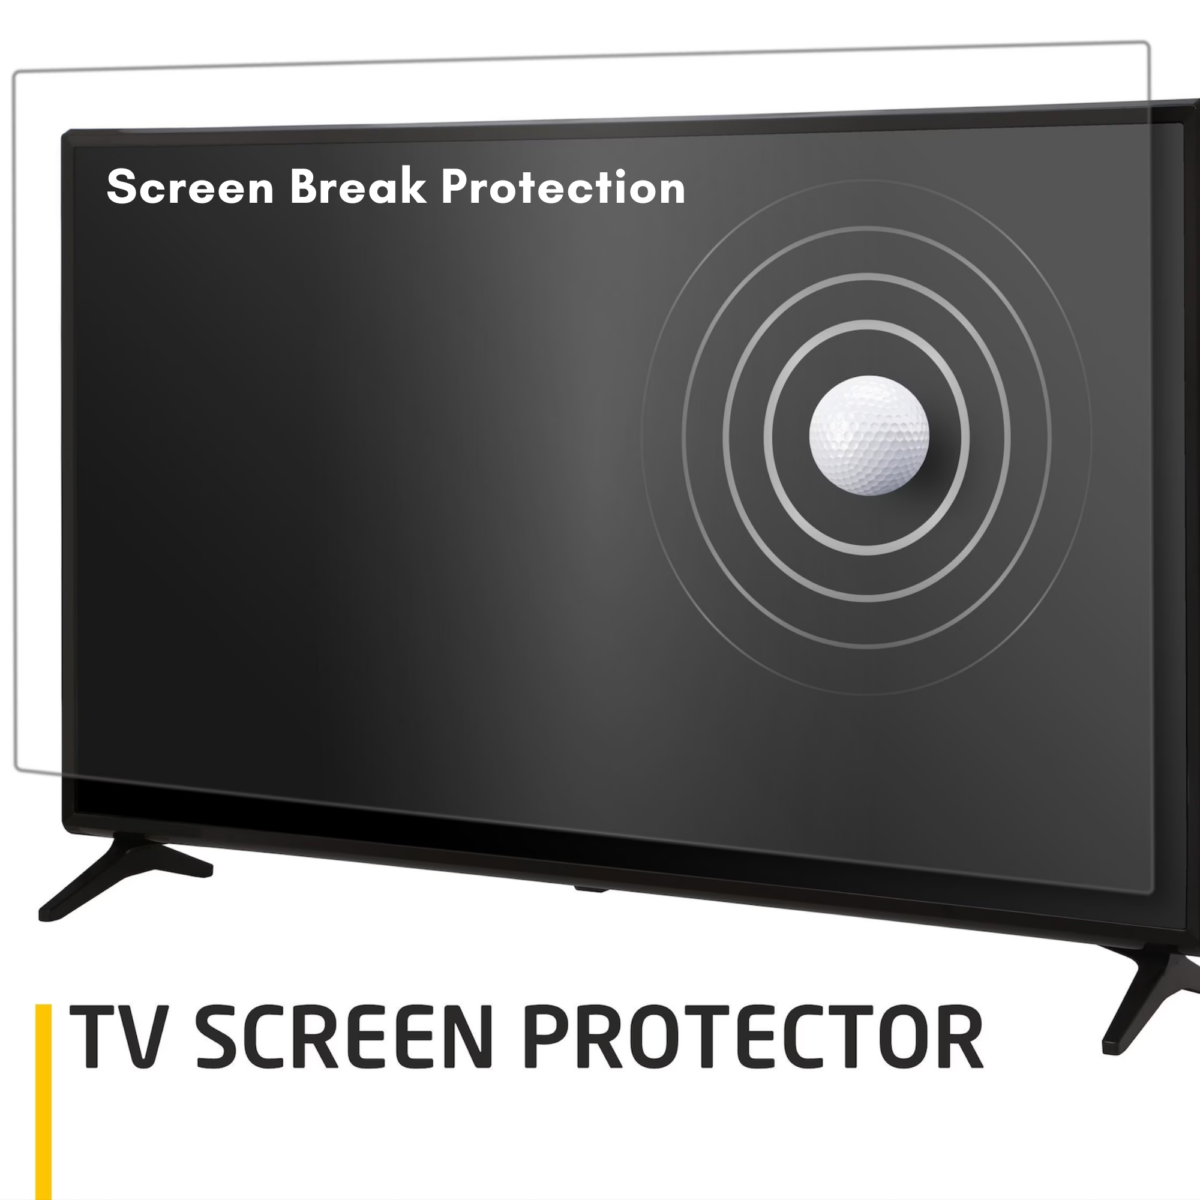 TV Screen Break